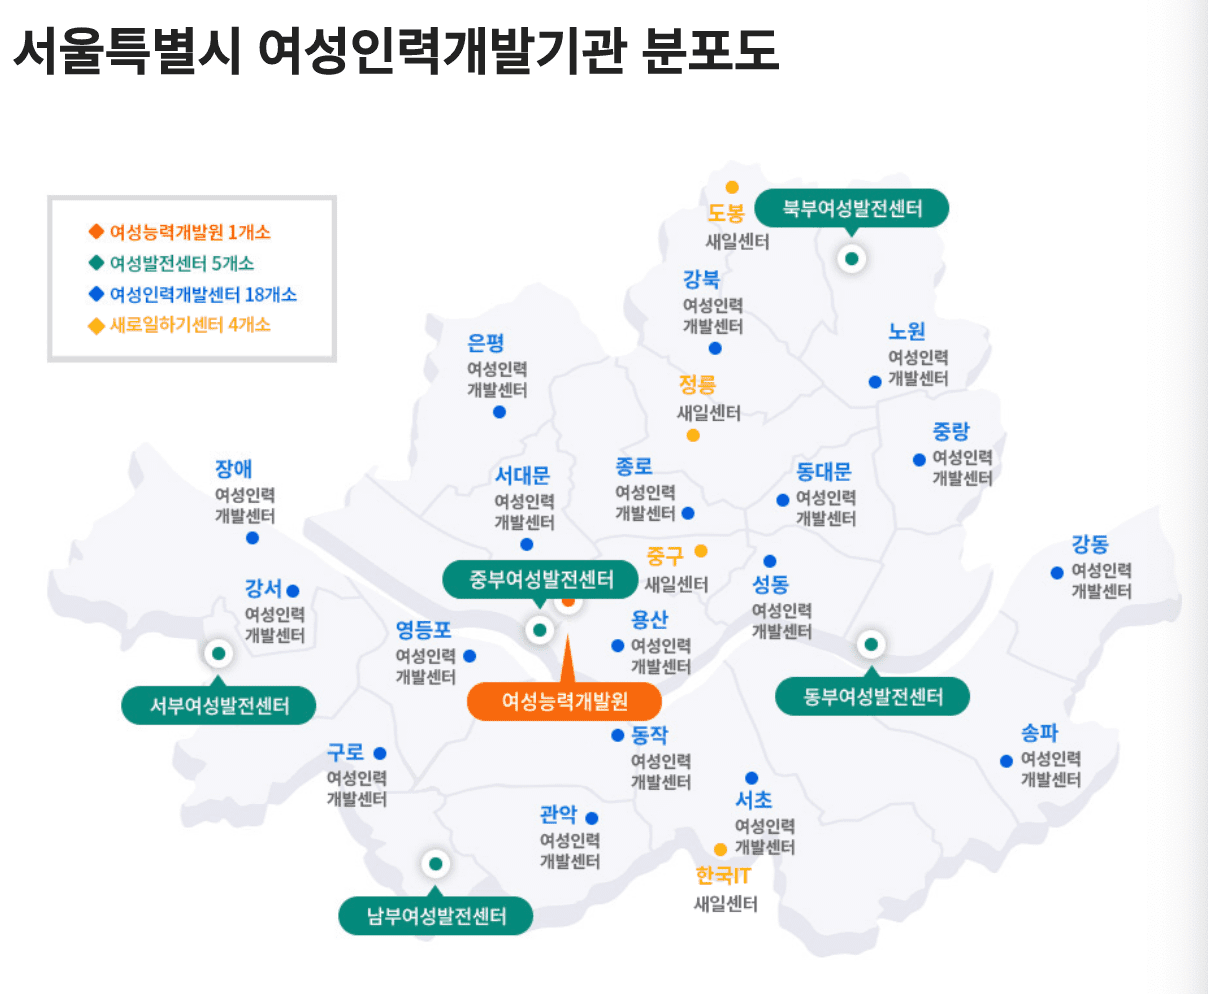 서울 여성인력개발기관 위치, 분포도